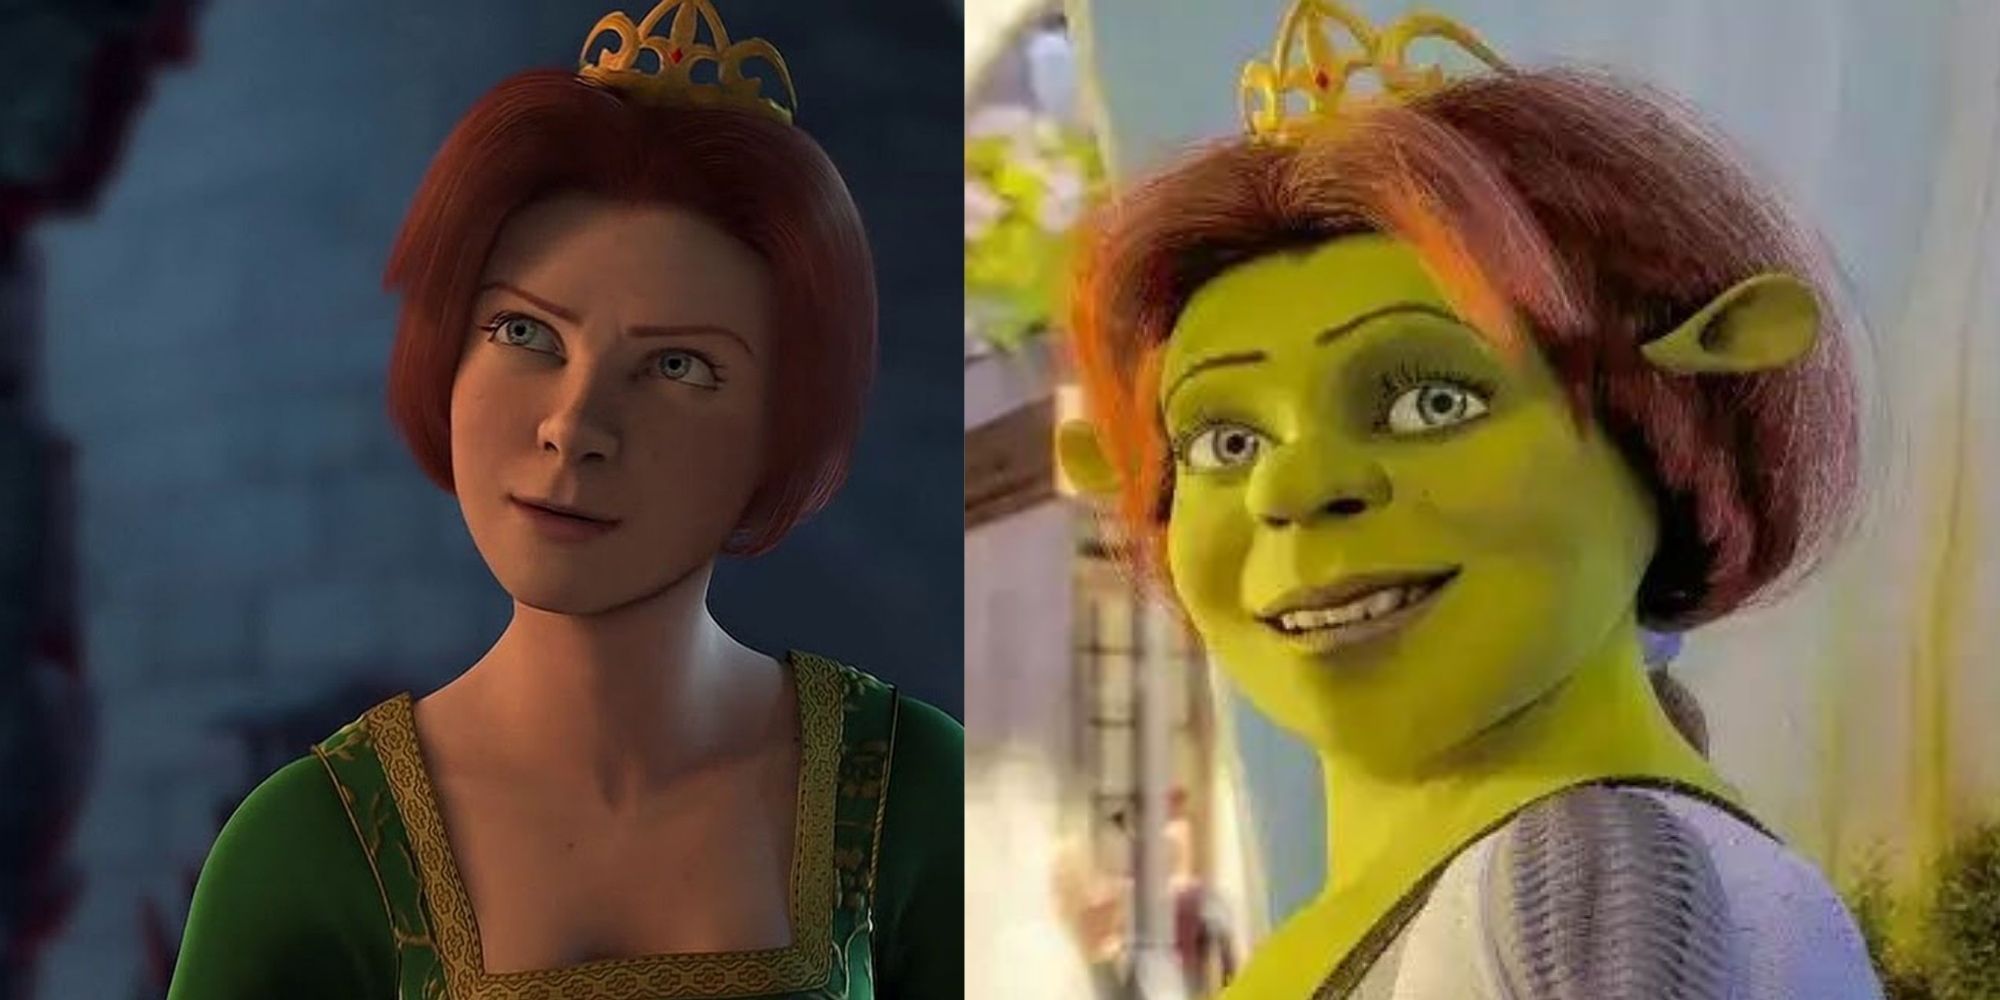 Shrek_Princess Fiona tem forma humana e forma de ogro